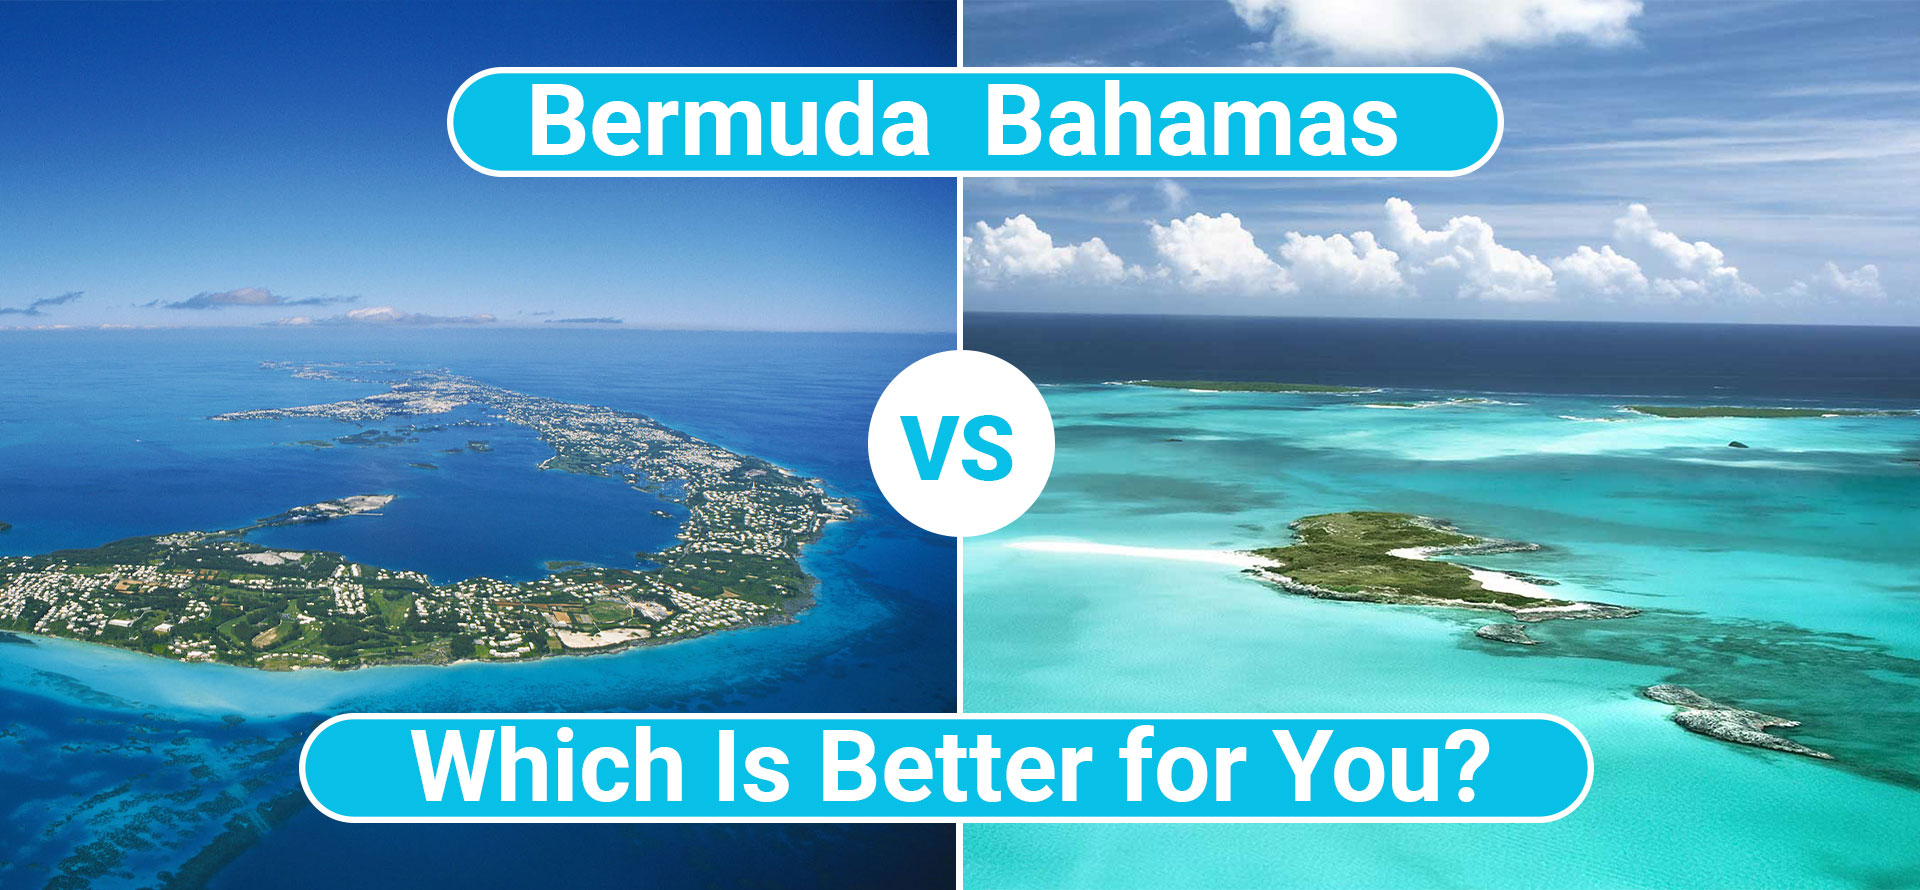 Bermuda vs bahamas.